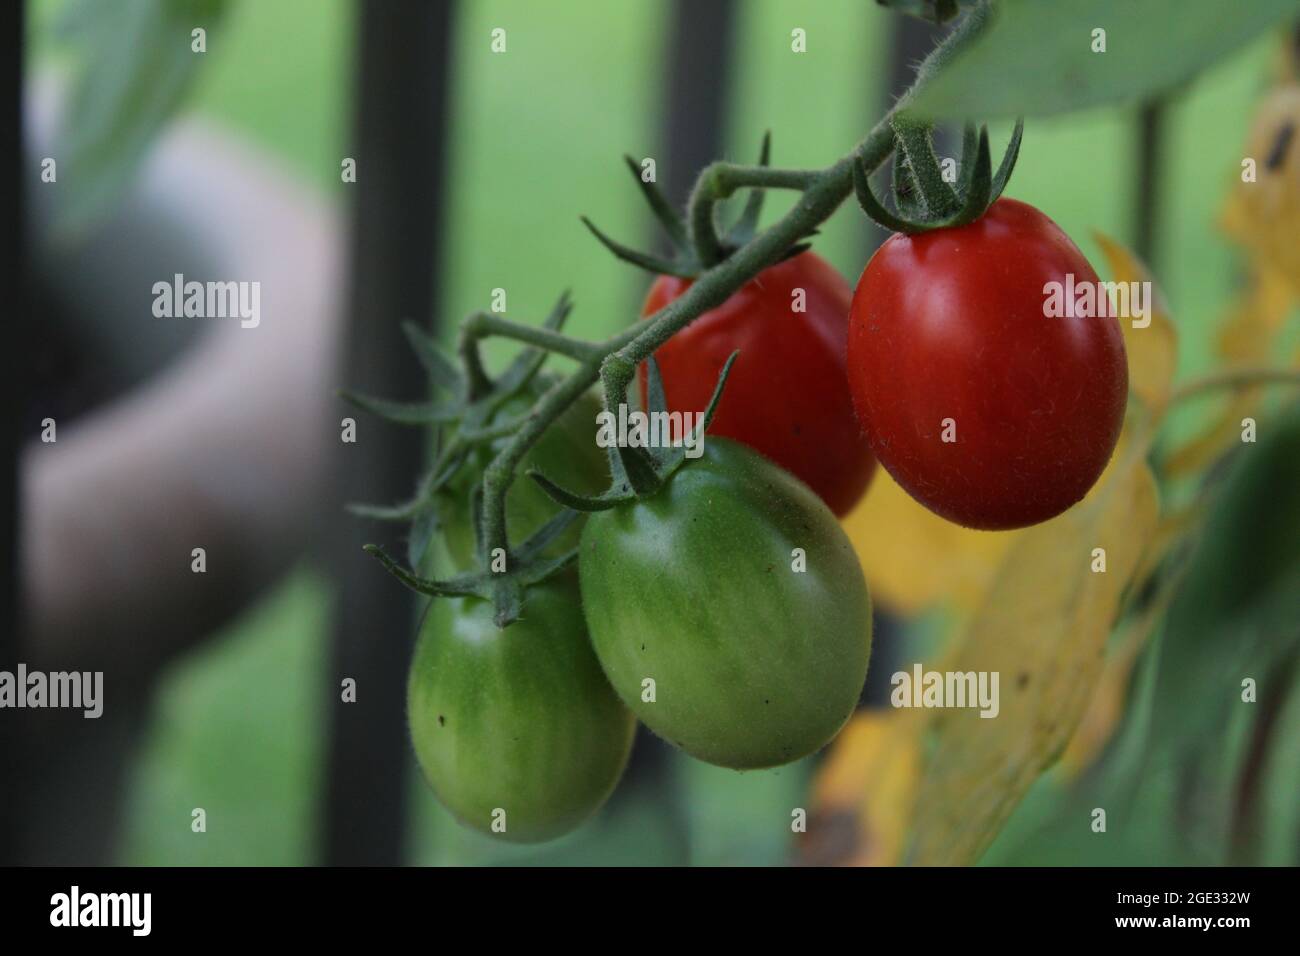 Voici la photo de tomatos dans mon jardin au moment de la croissance, il est agréable de voir comment frais il regarde la plante de tomate et ceux qui poussent. Banque D'Images